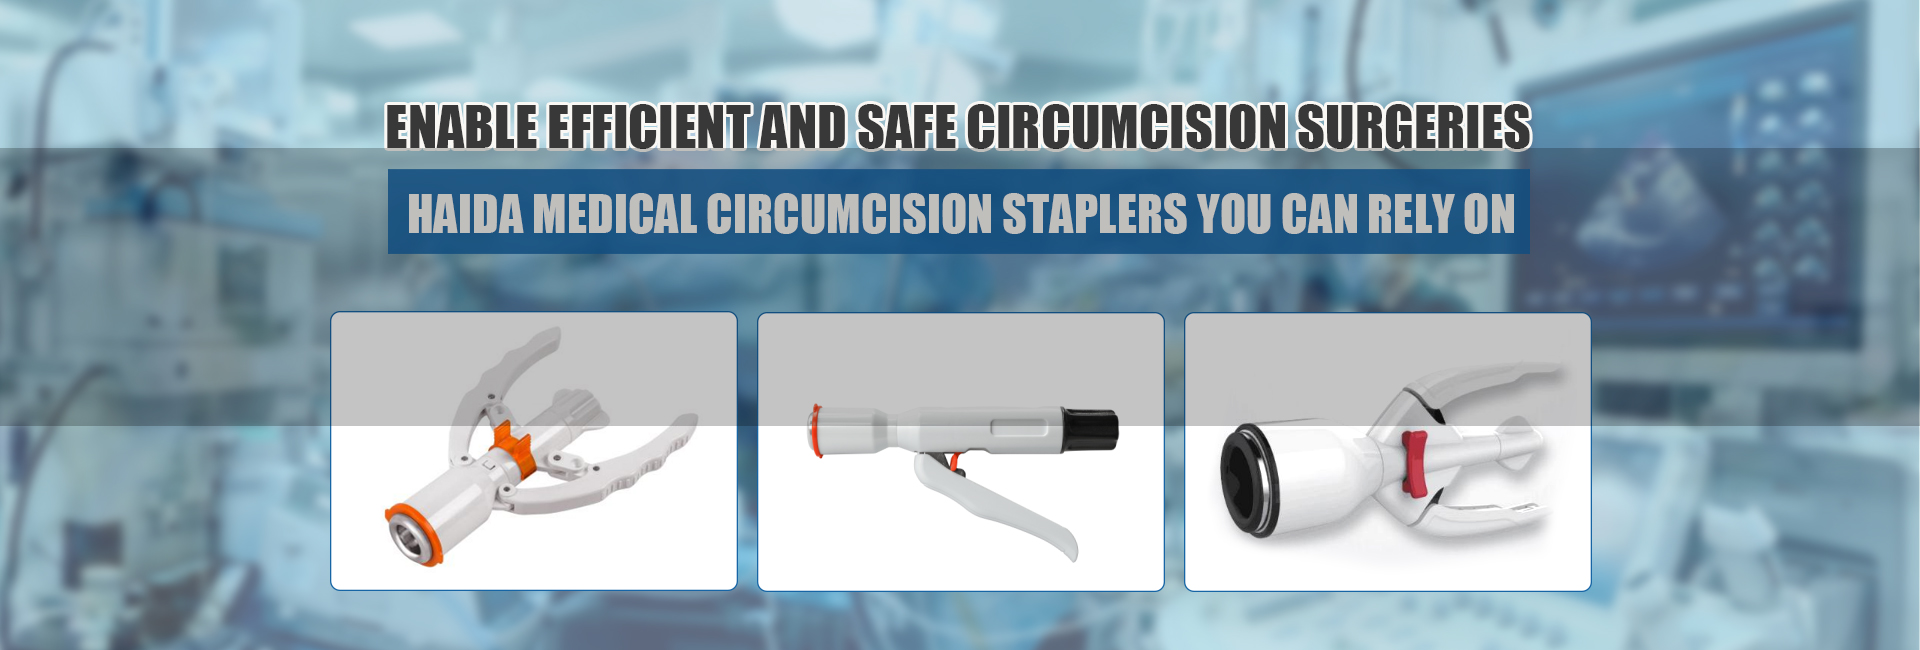 Dispositivos de circuncisión